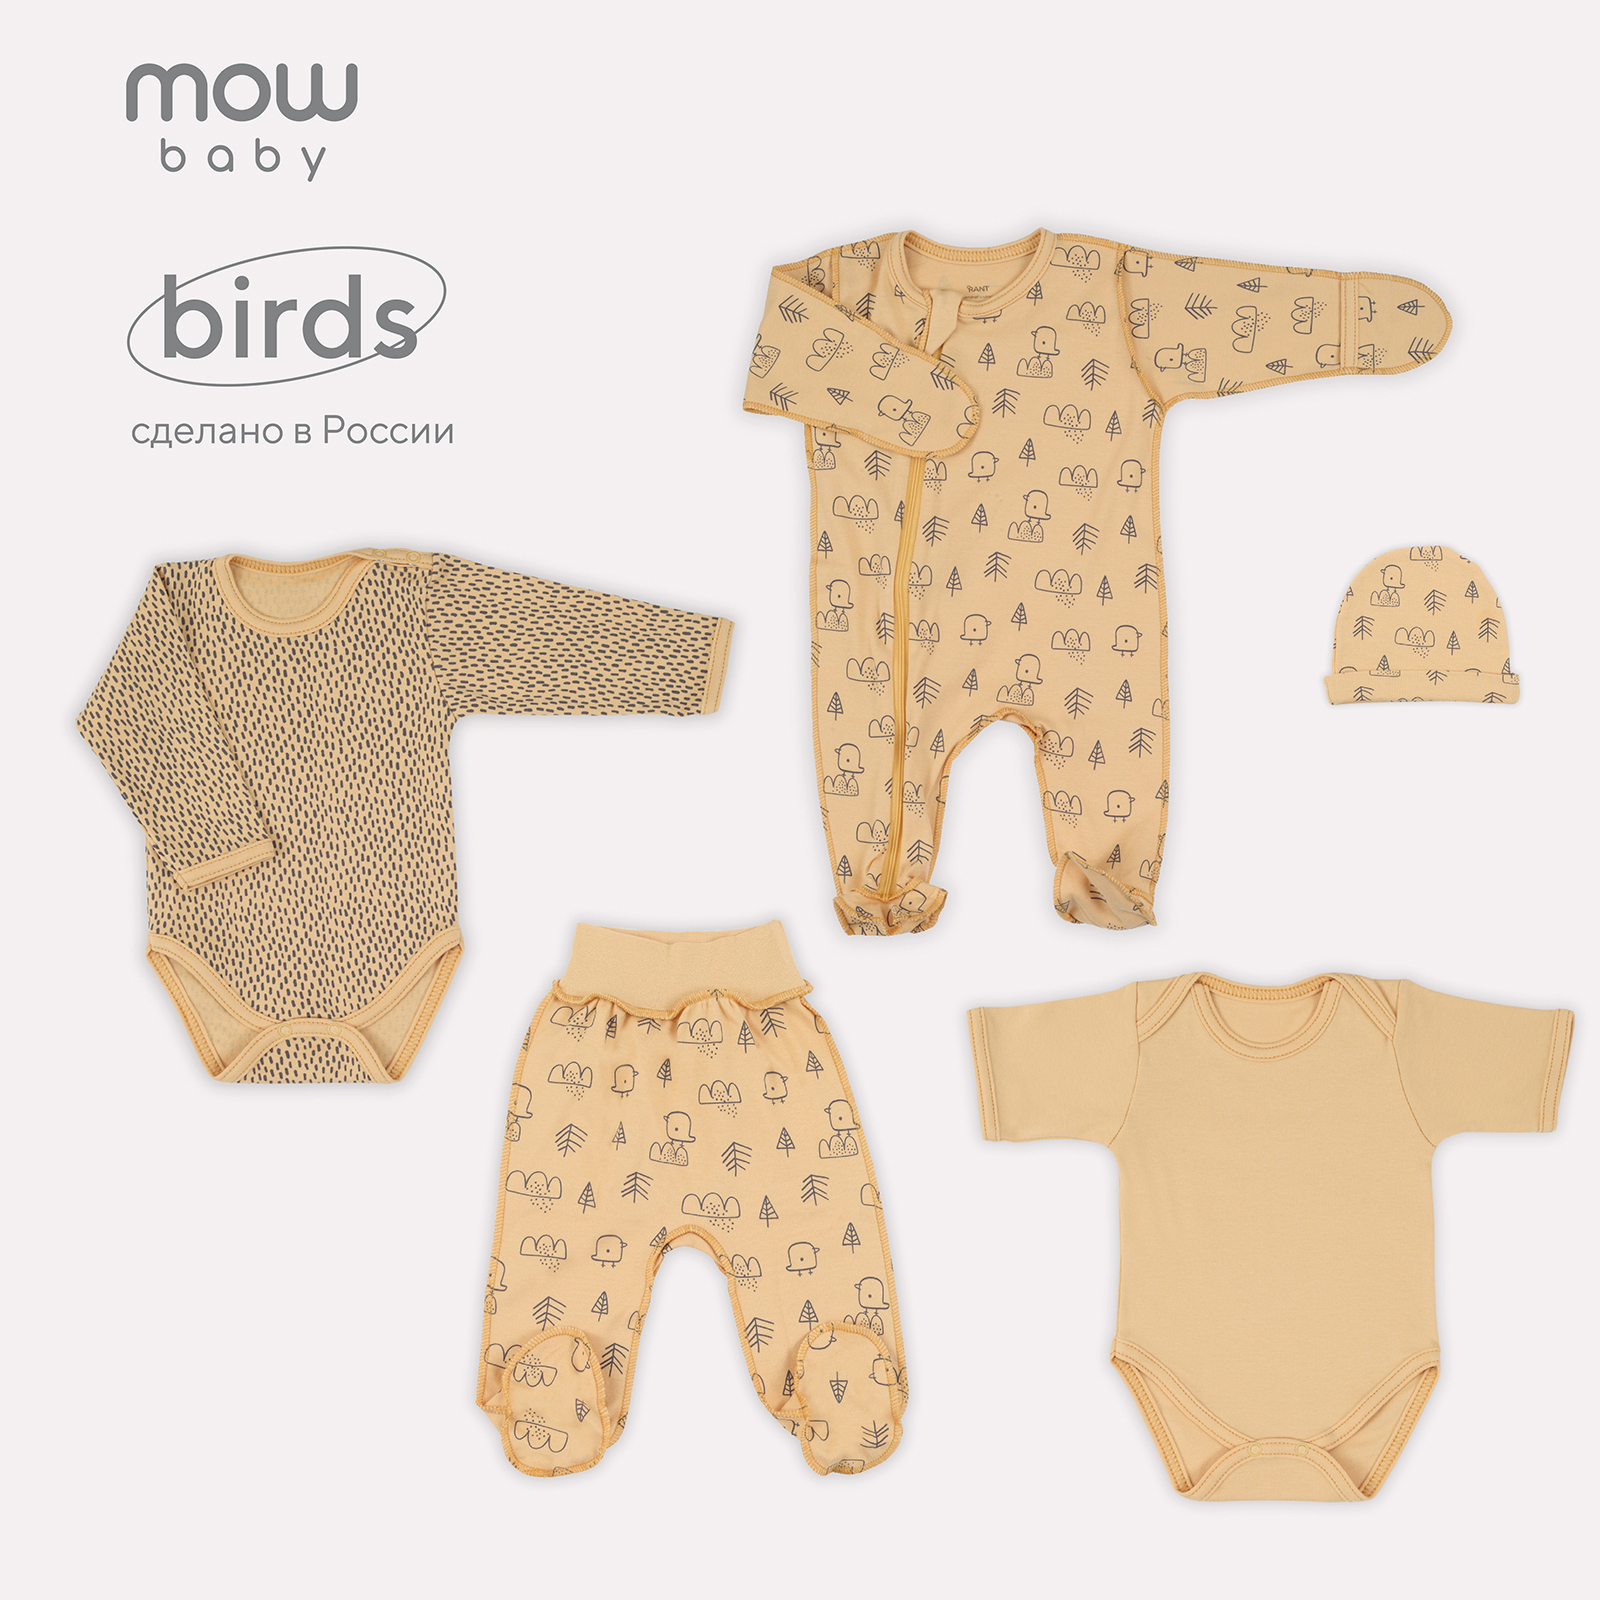 Комплект одежды для новорожденного MowBaby Birds Yellow 5-82 р.56 (5 предметов) комплект одежды для новорожденного mowbaby birds yellow 5 82 р 56 5 предметов